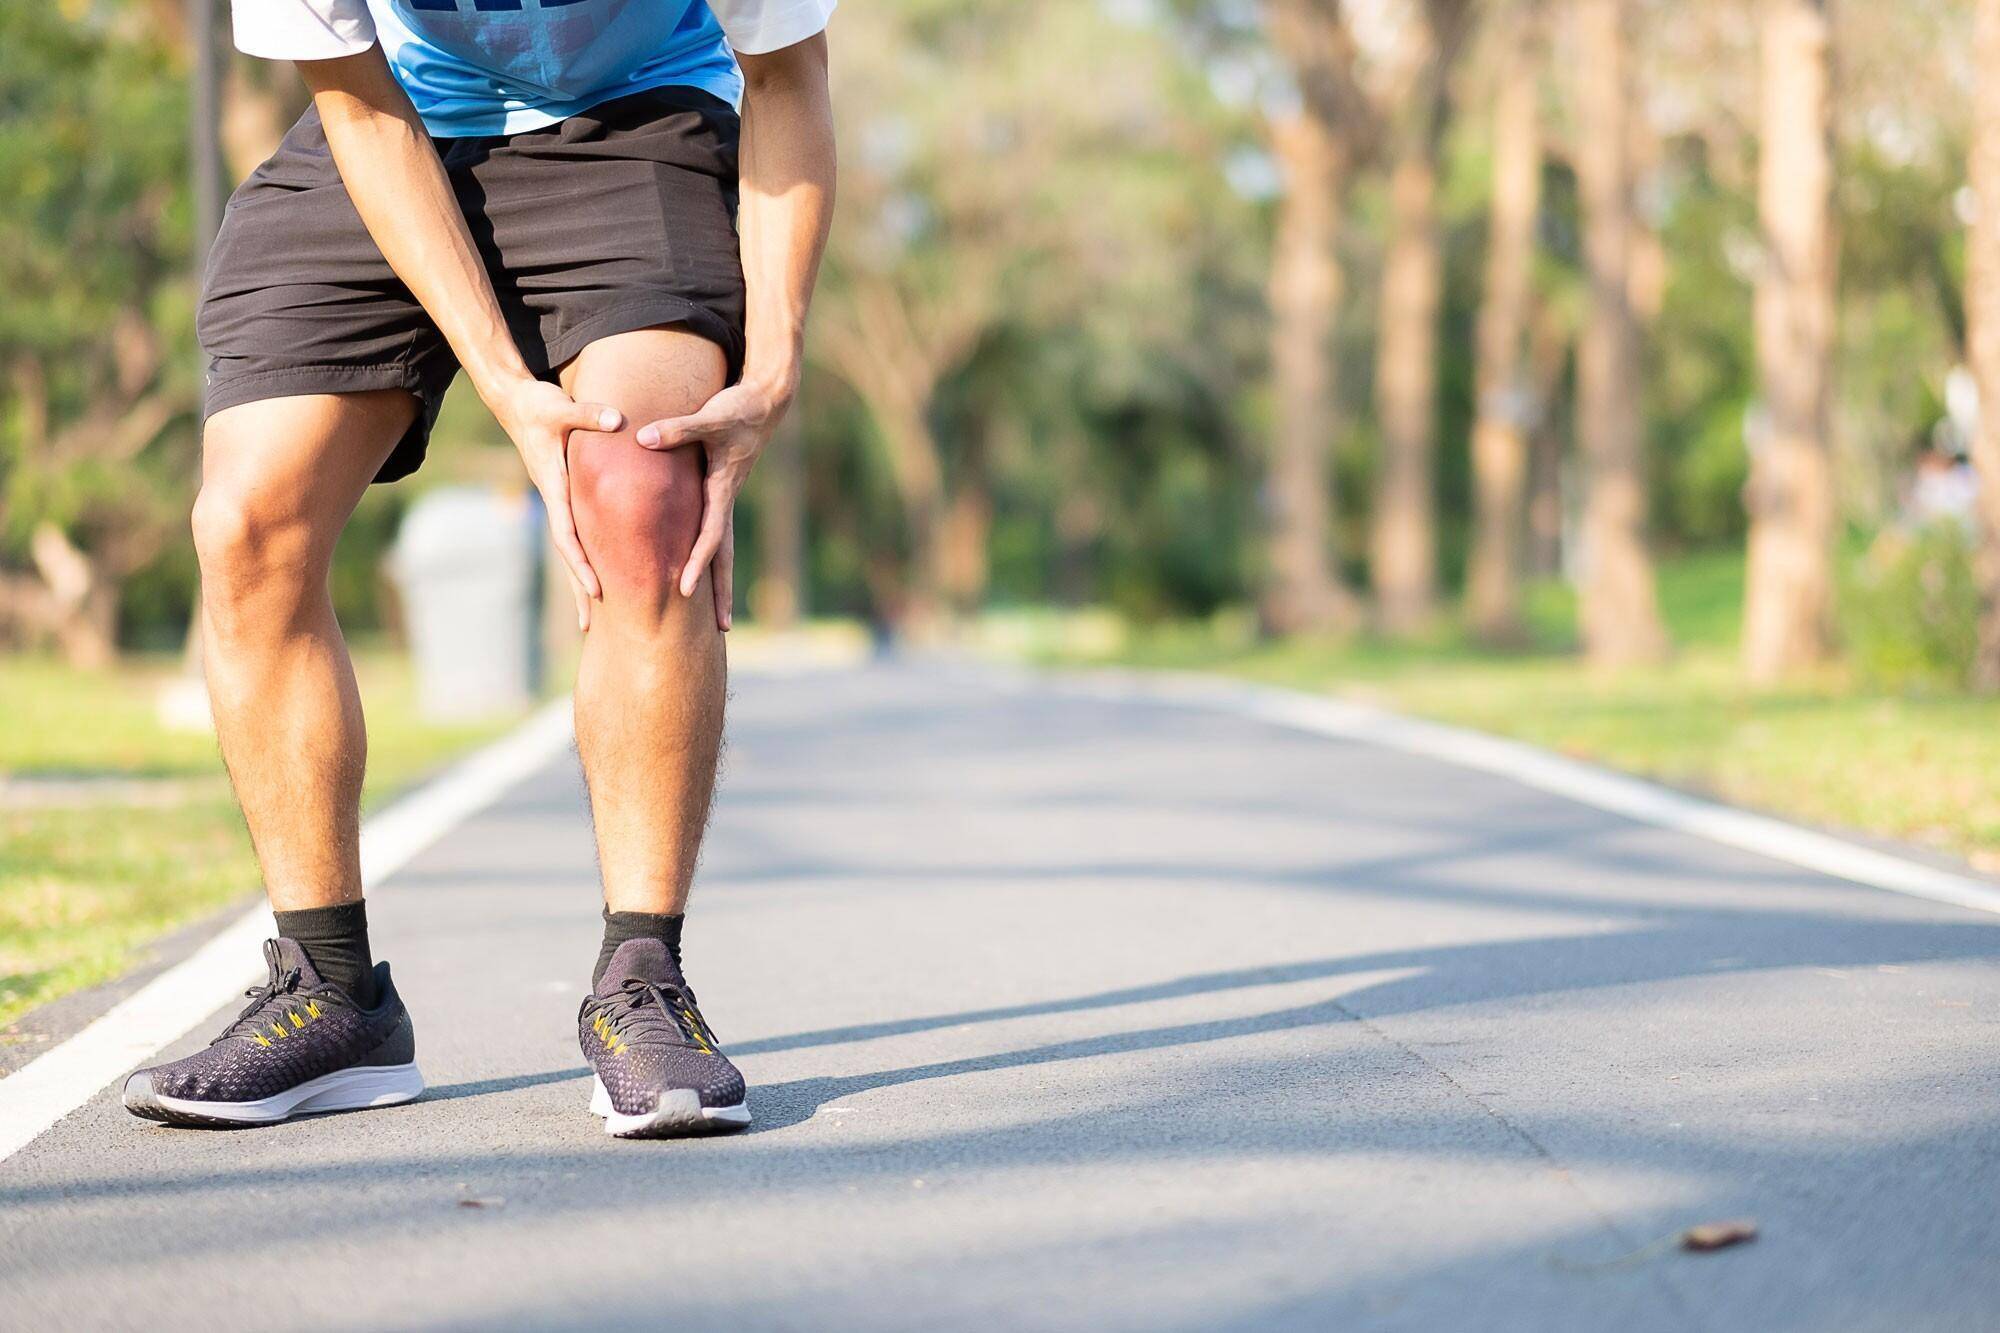 Разрушаются ли коленные суставы при беге? - новости медицины